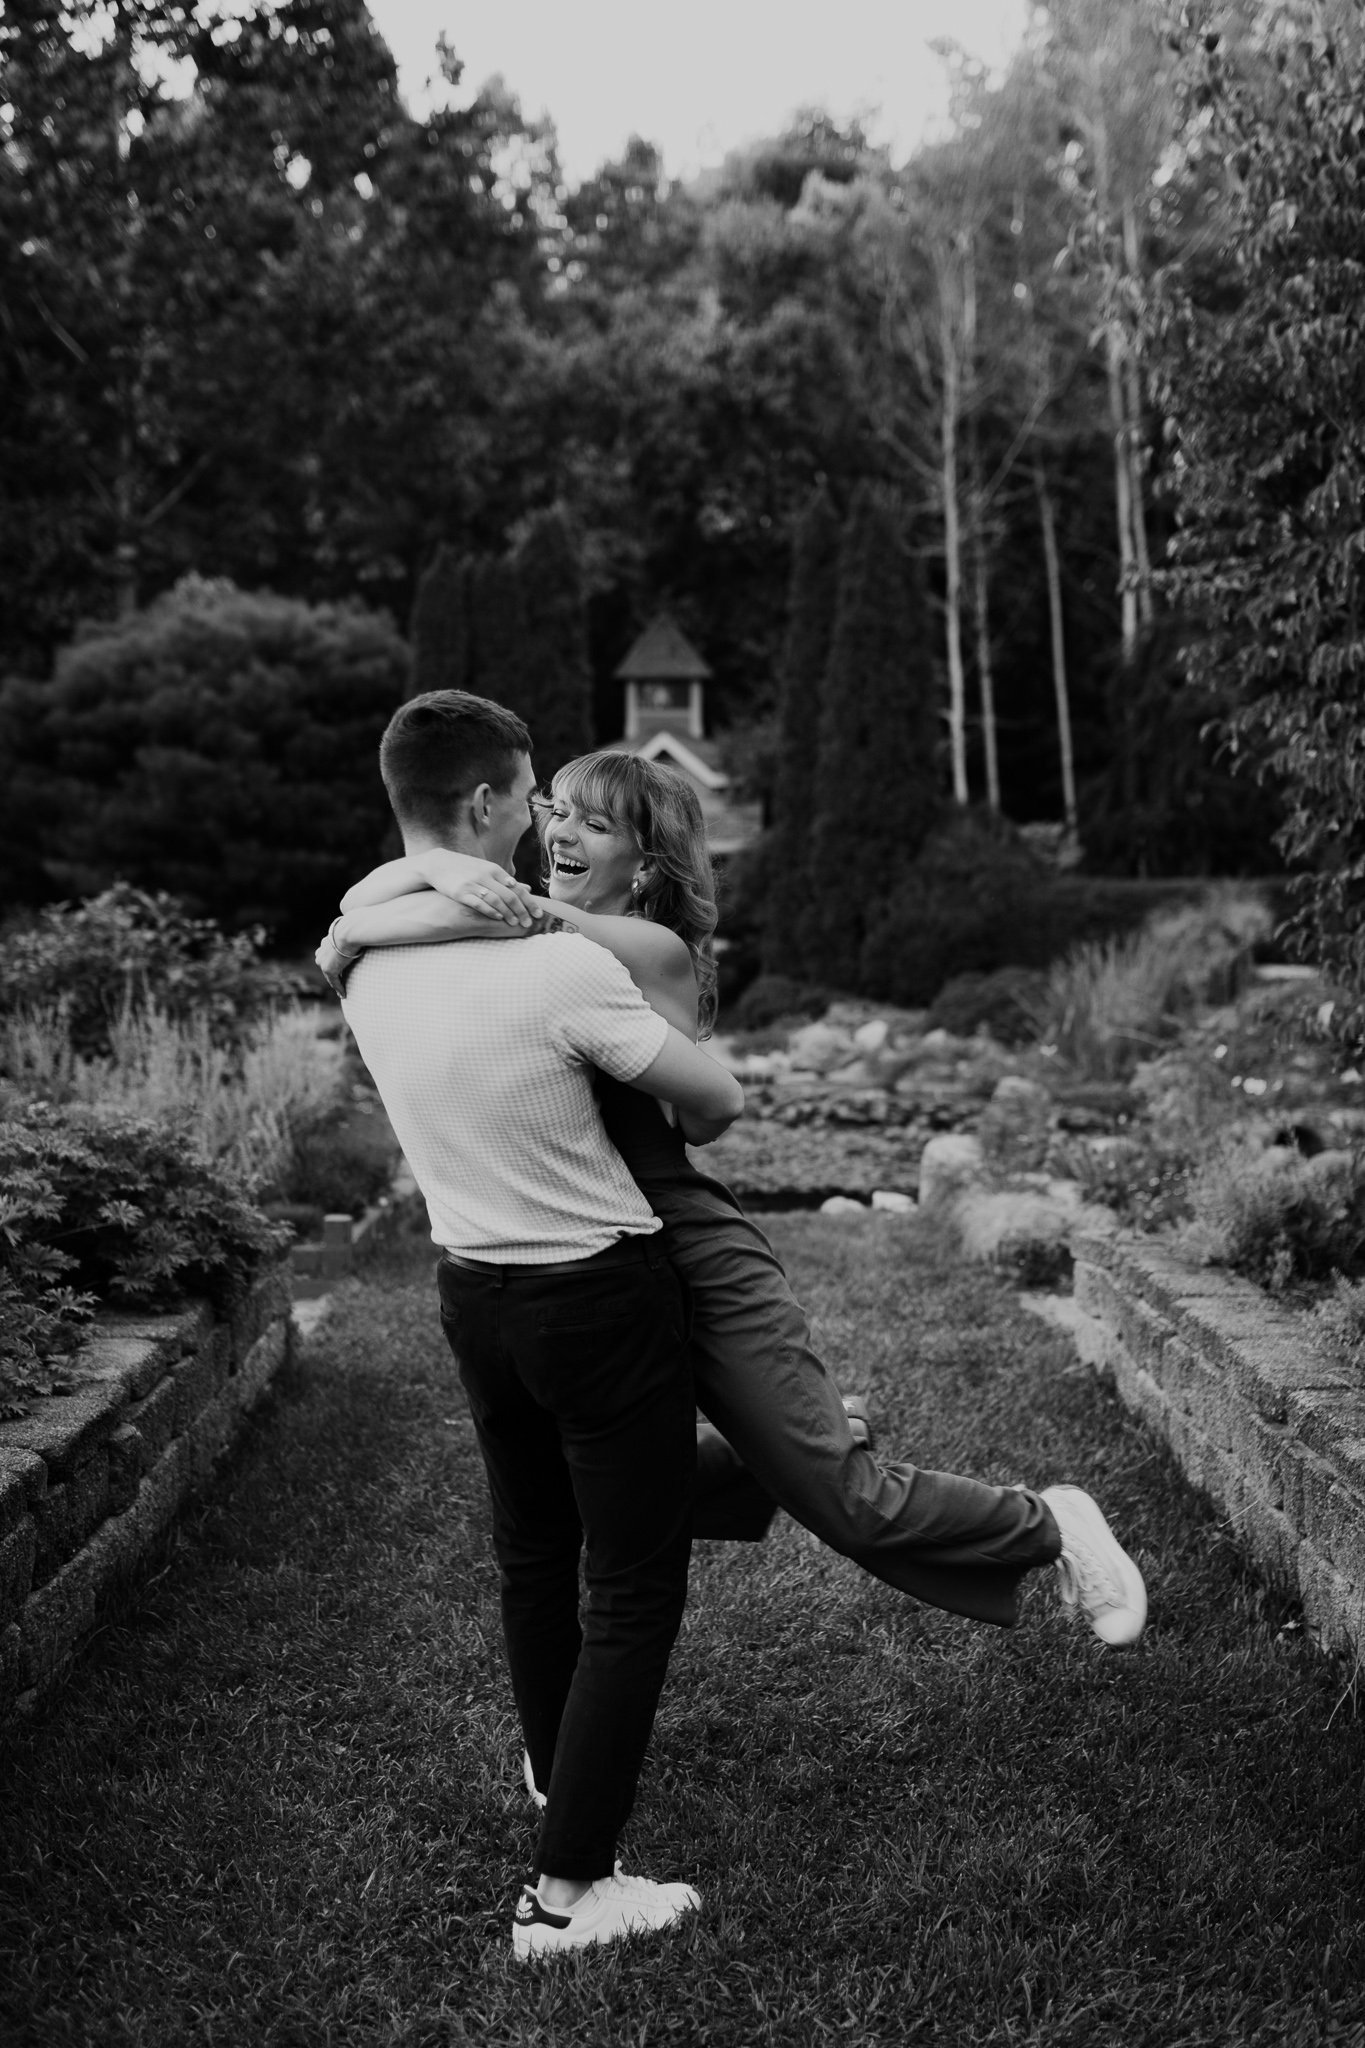 Defries Gardens Indiana couple photos || Dancing through the gardens